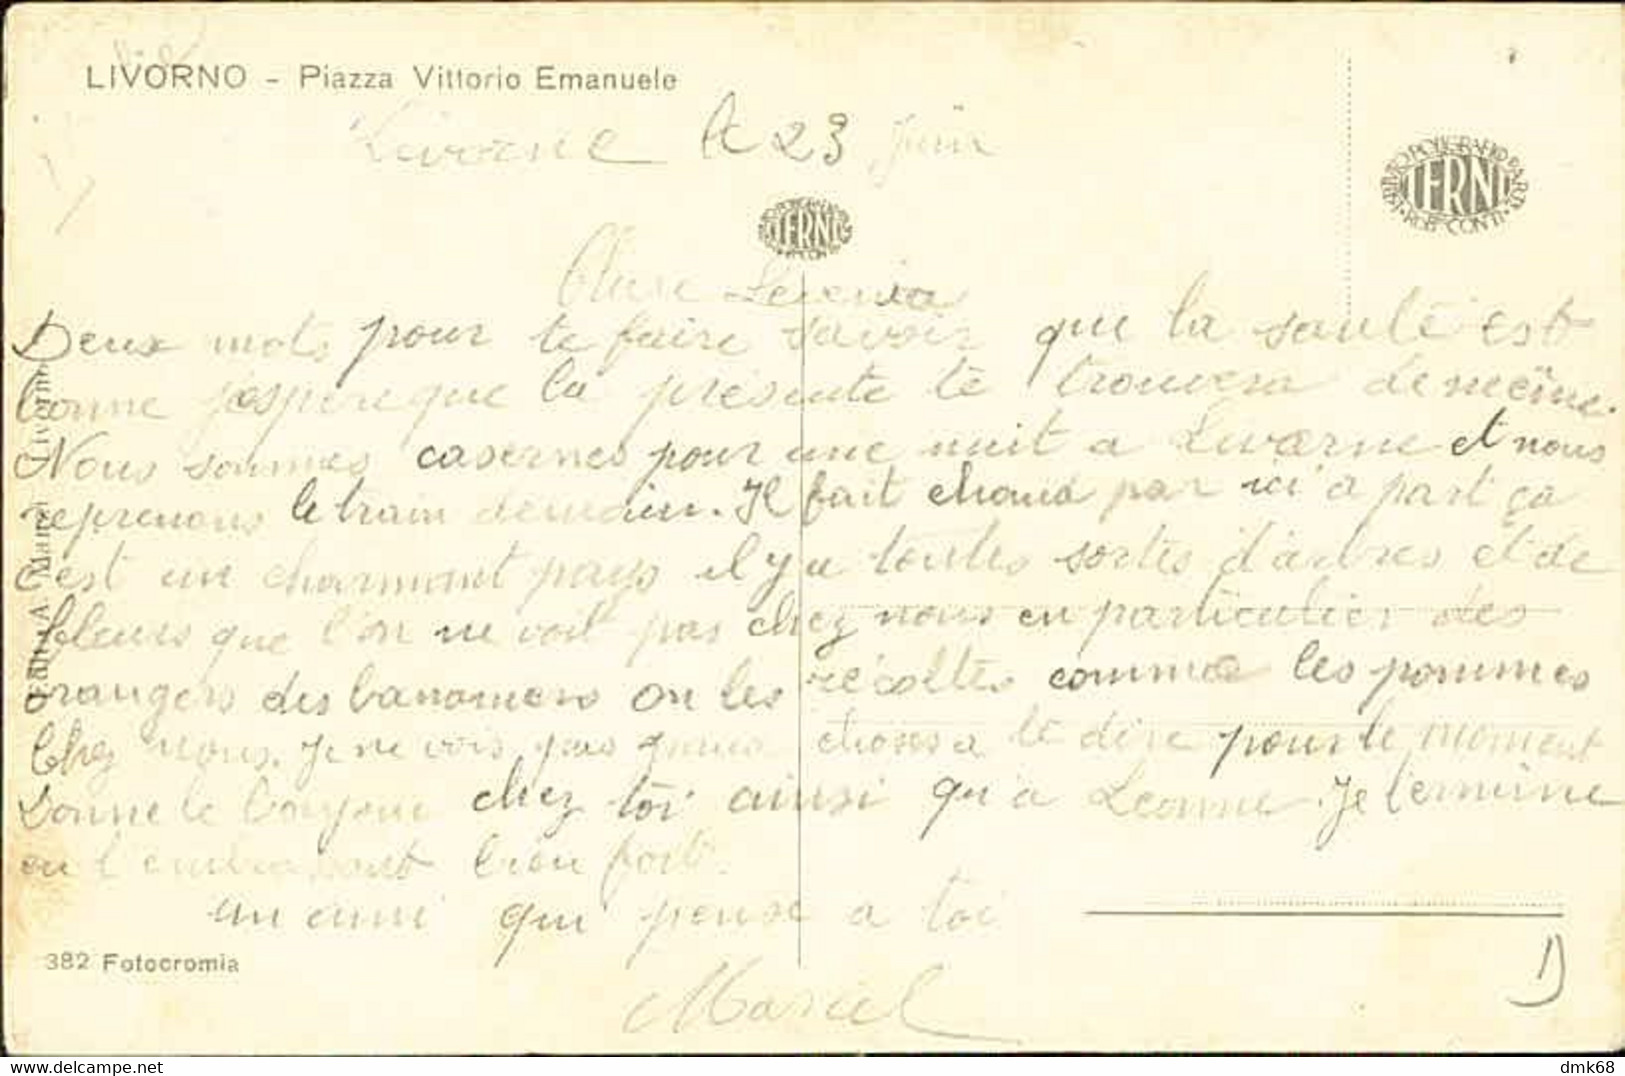 LIVORNO - PIAZZA VITTORIO EMANUELE  / TRAM - EDIZIONE CONTI - 1910s  (11496) - Livorno